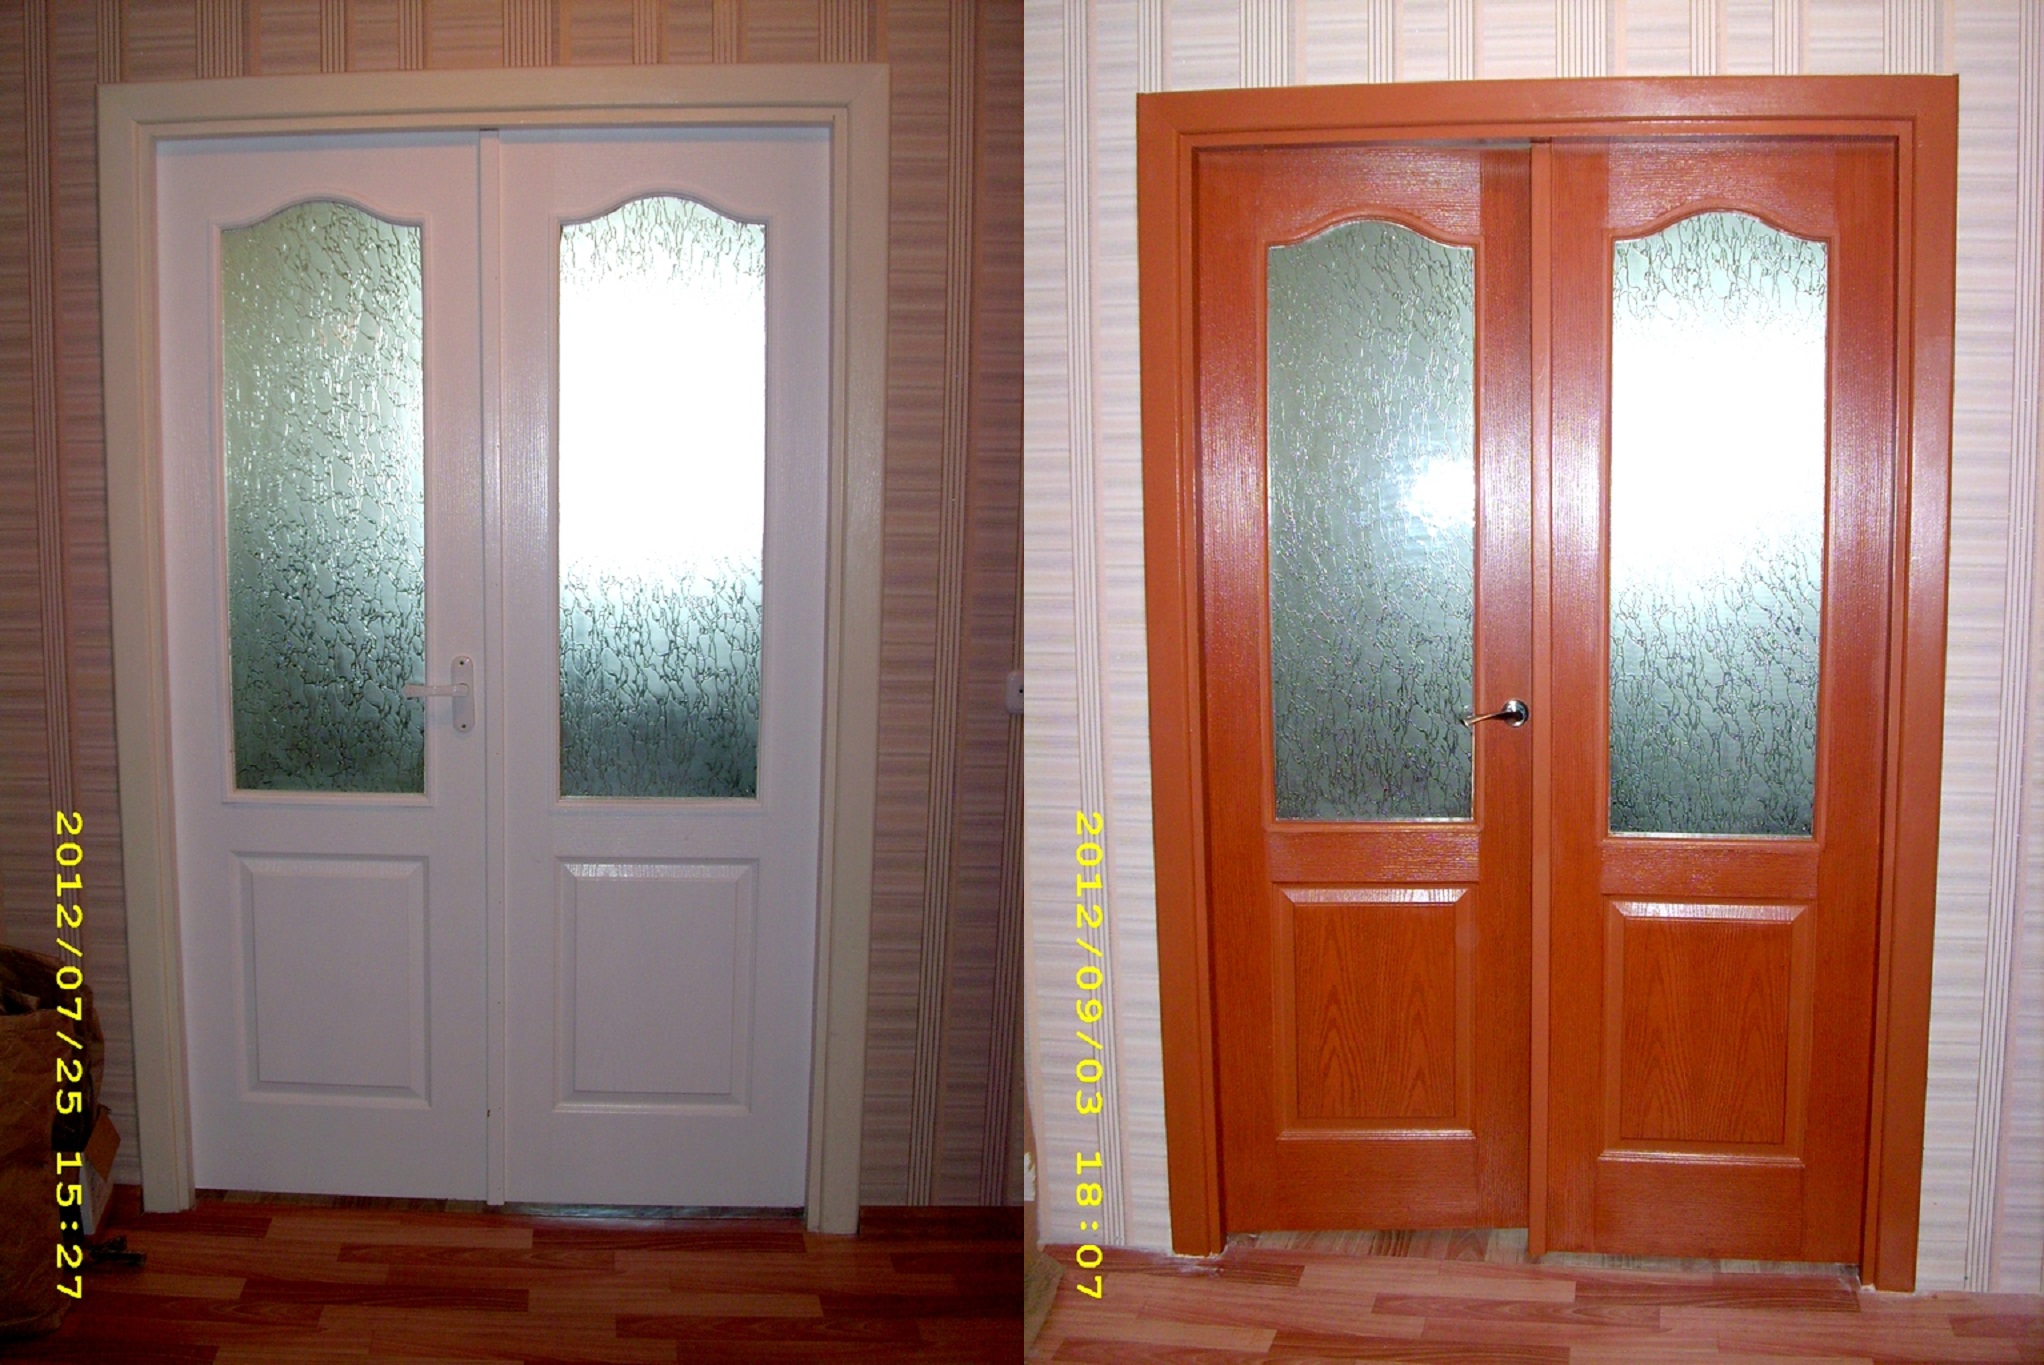 Двойная распашная дверь в зал до и после проведения работ